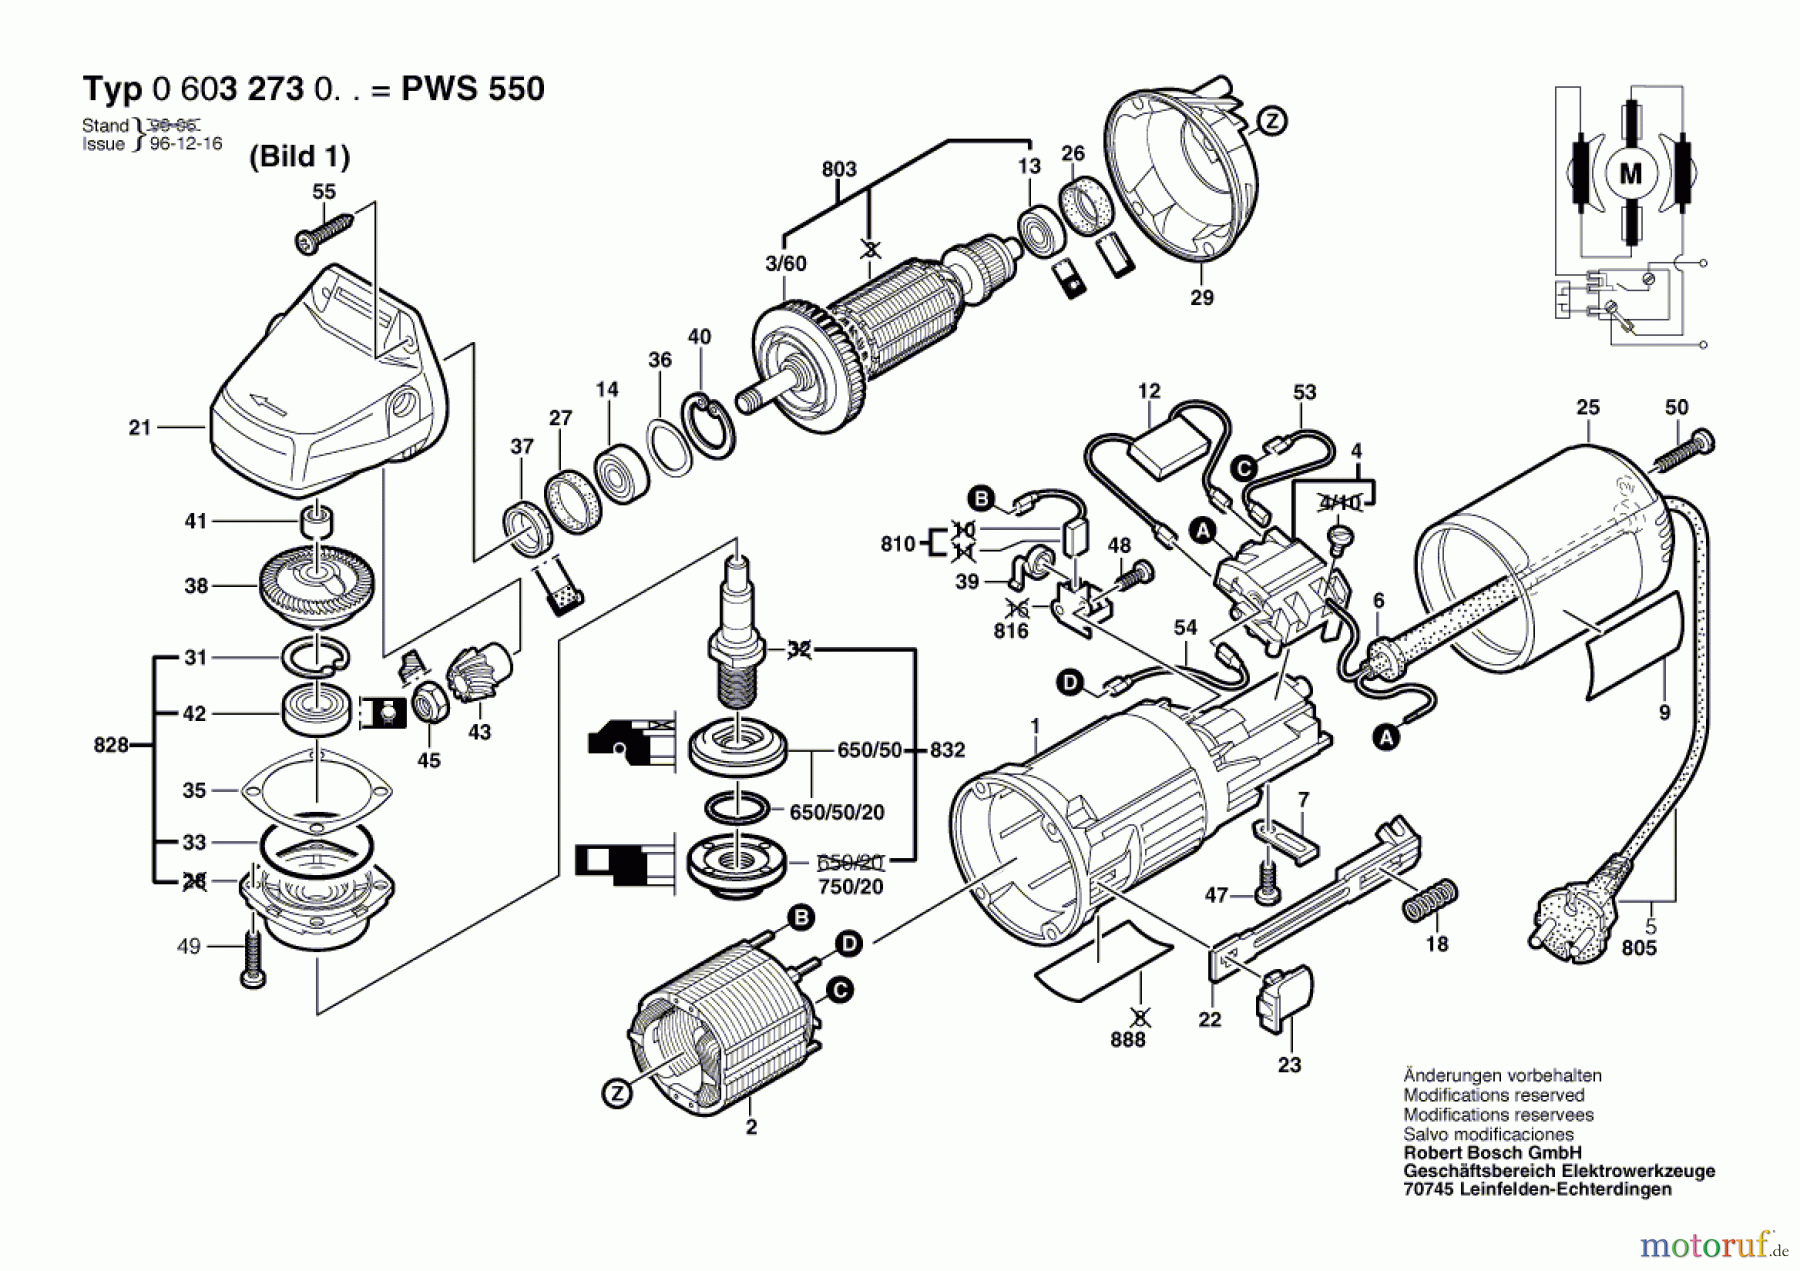  Bosch Werkzeug Hw-Winkelschleifer PWS 550 Seite 1